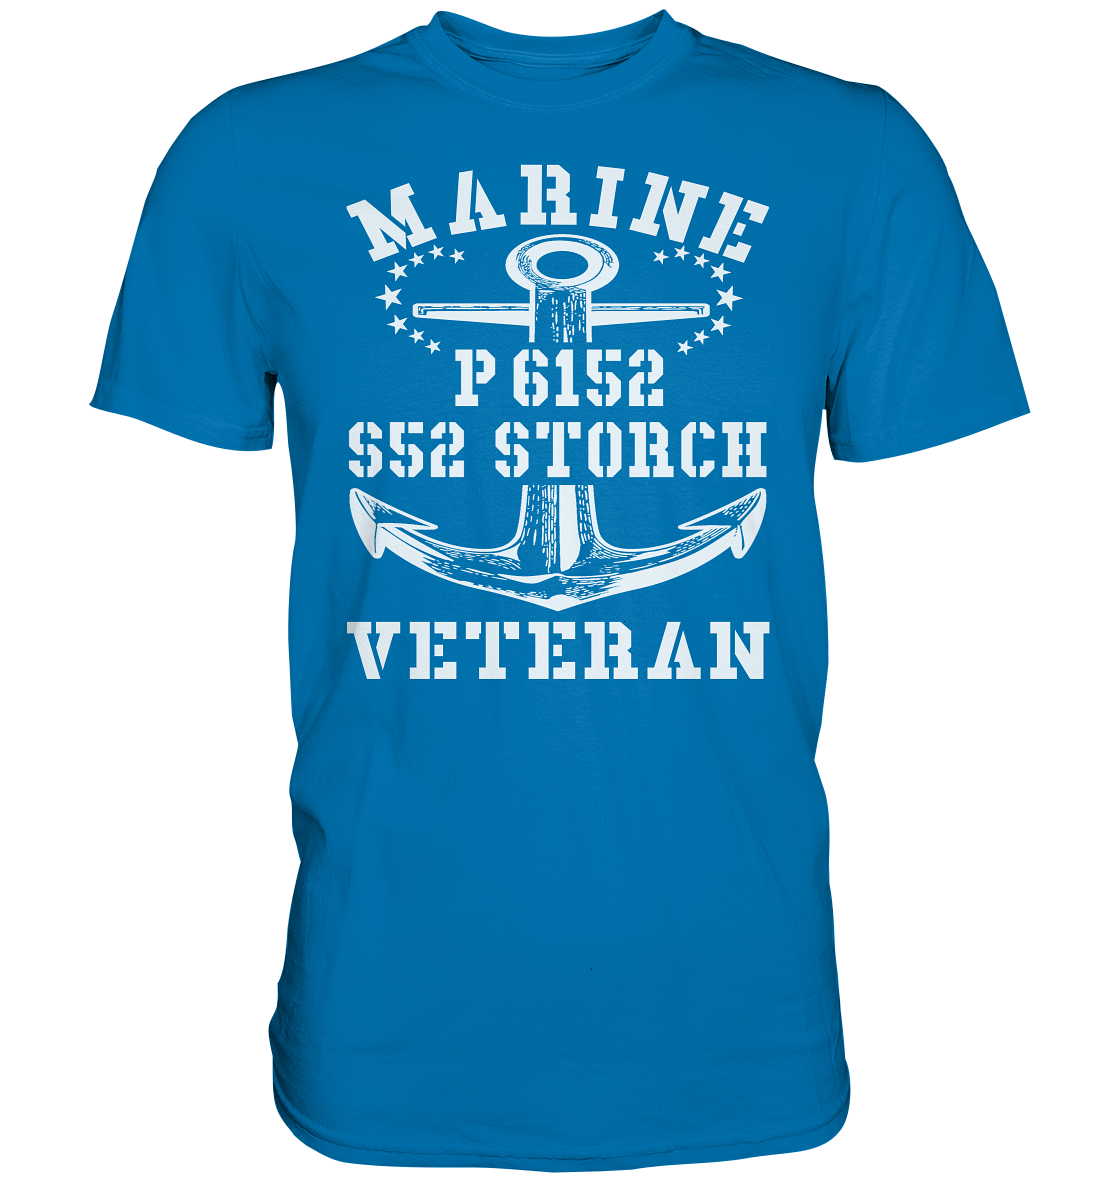 P6152 S52 STORCH Marine Veteran - Premium Shirt